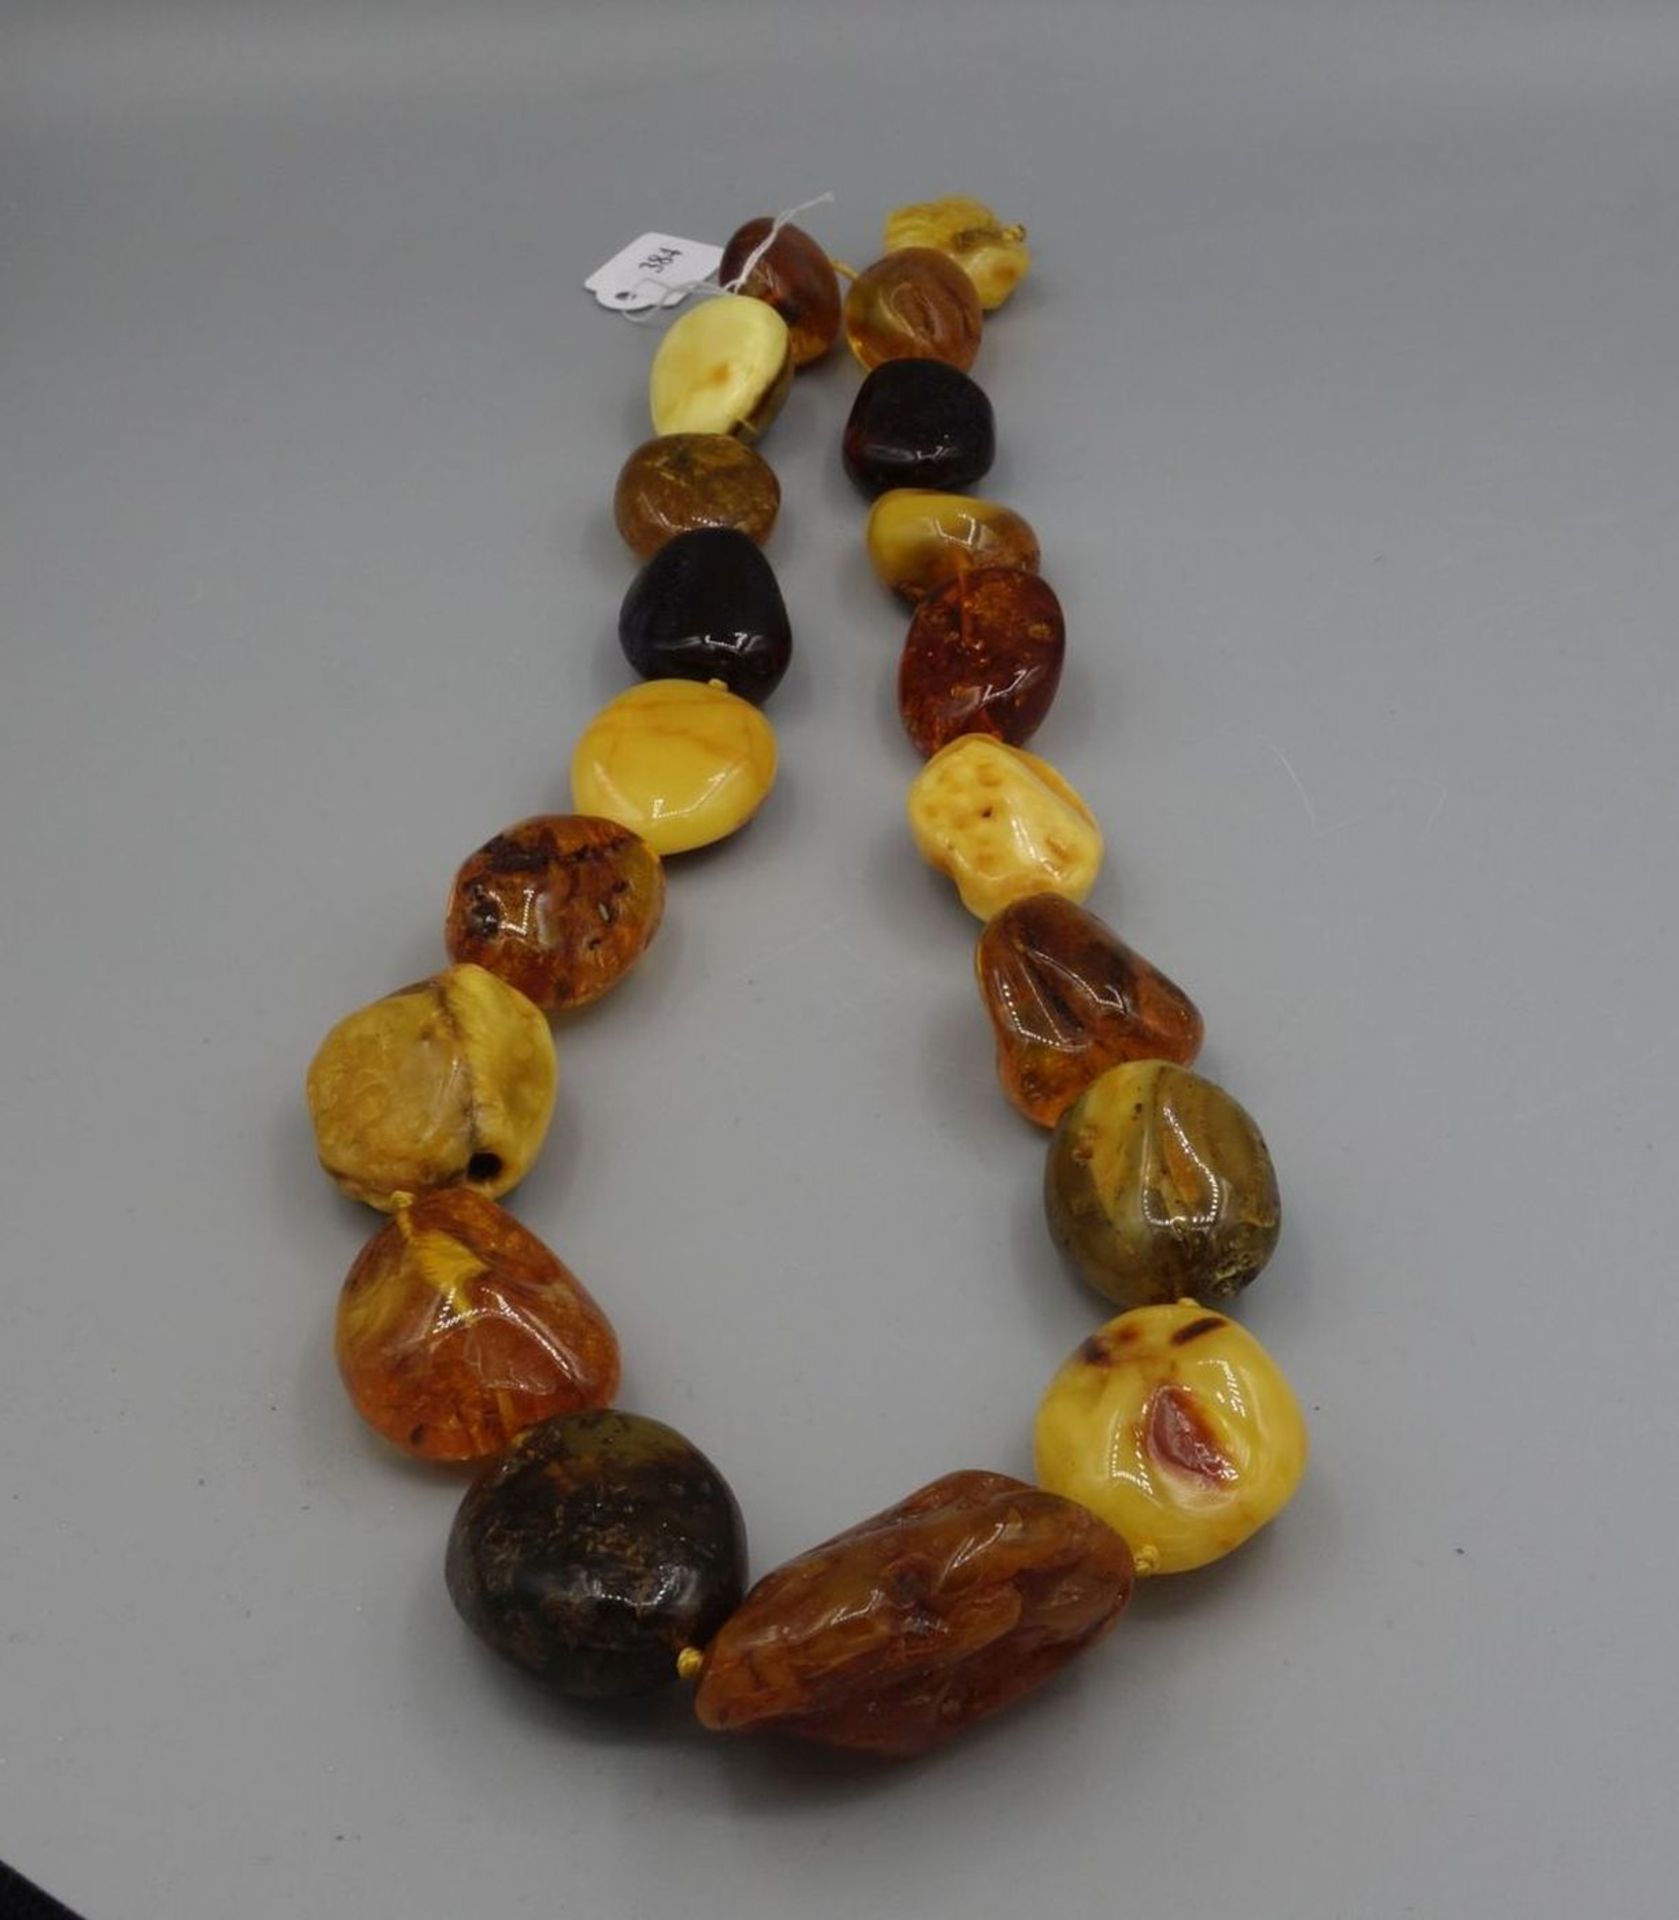 BERNSTEINKETTE / - STRANG / amber necklace, mit 19 Steinen unterschiedliche Farbigkeit, Form und - Bild 3 aus 5